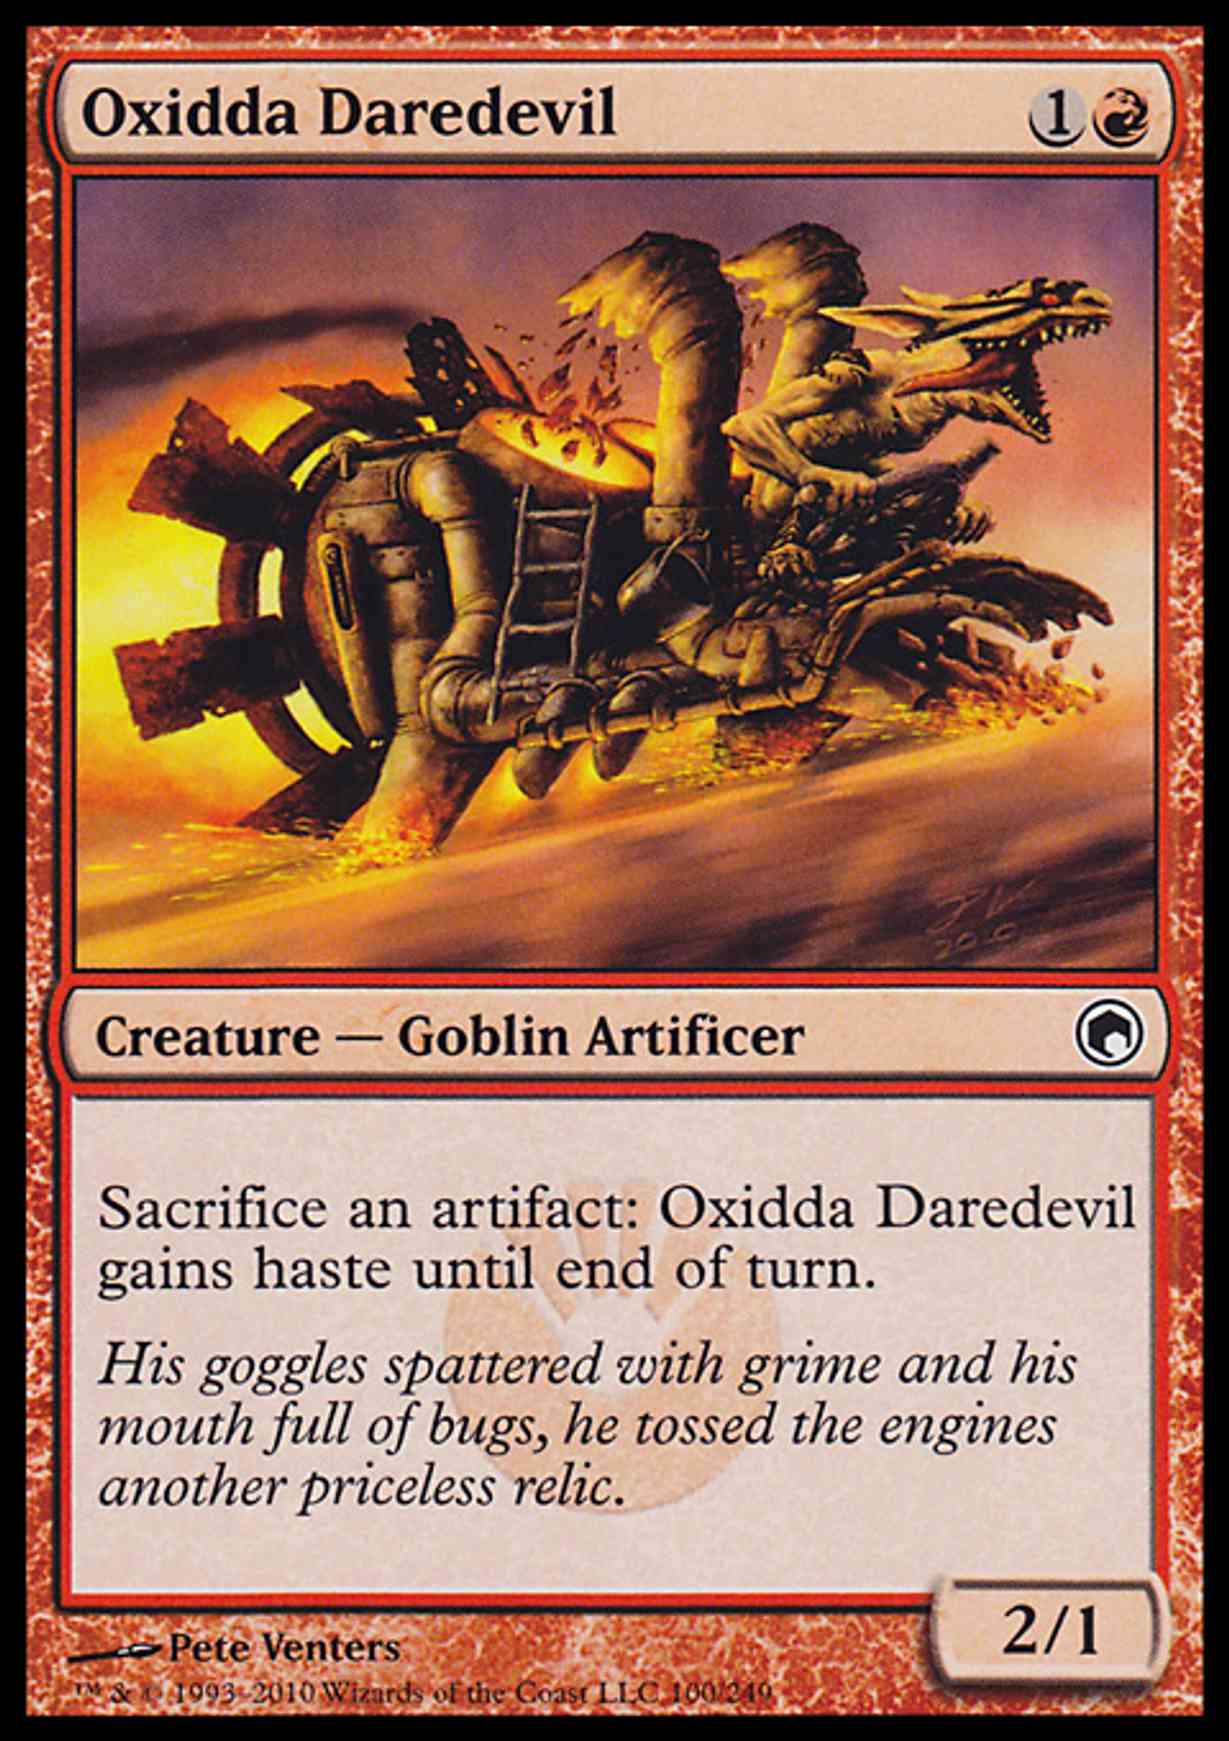 Oxidda Daredevil magic card front